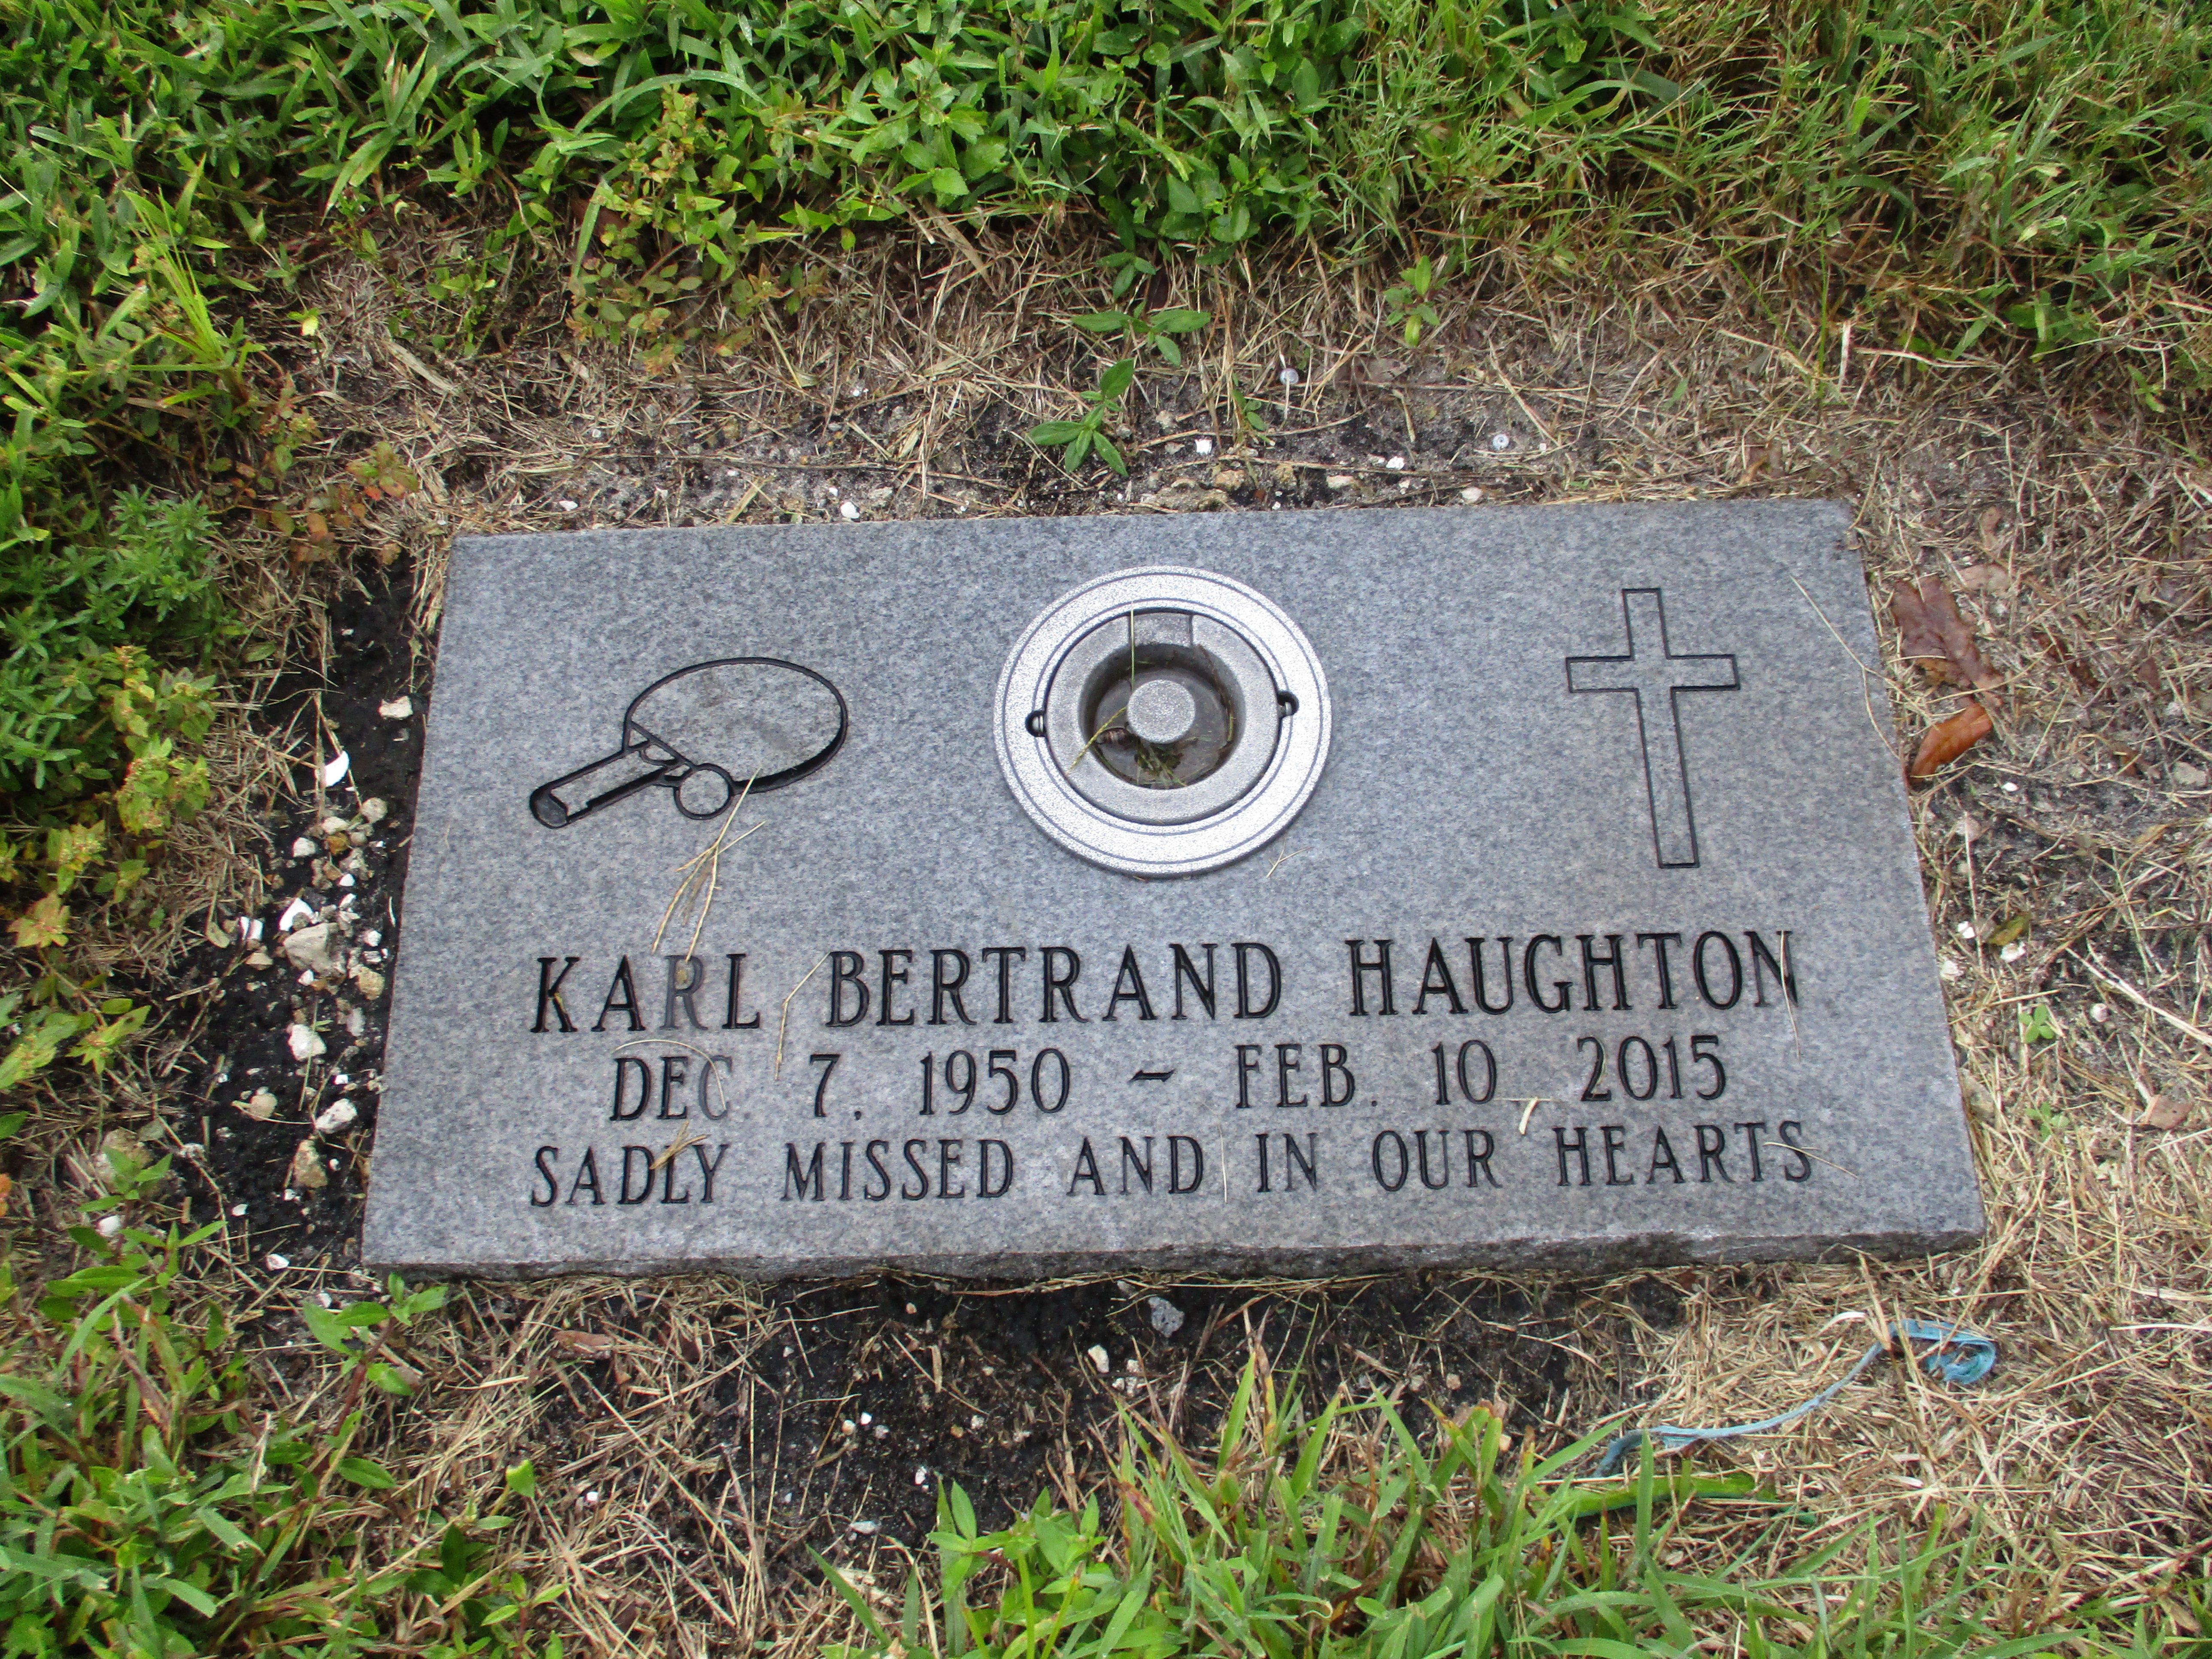 Karl Bertrand Haughton